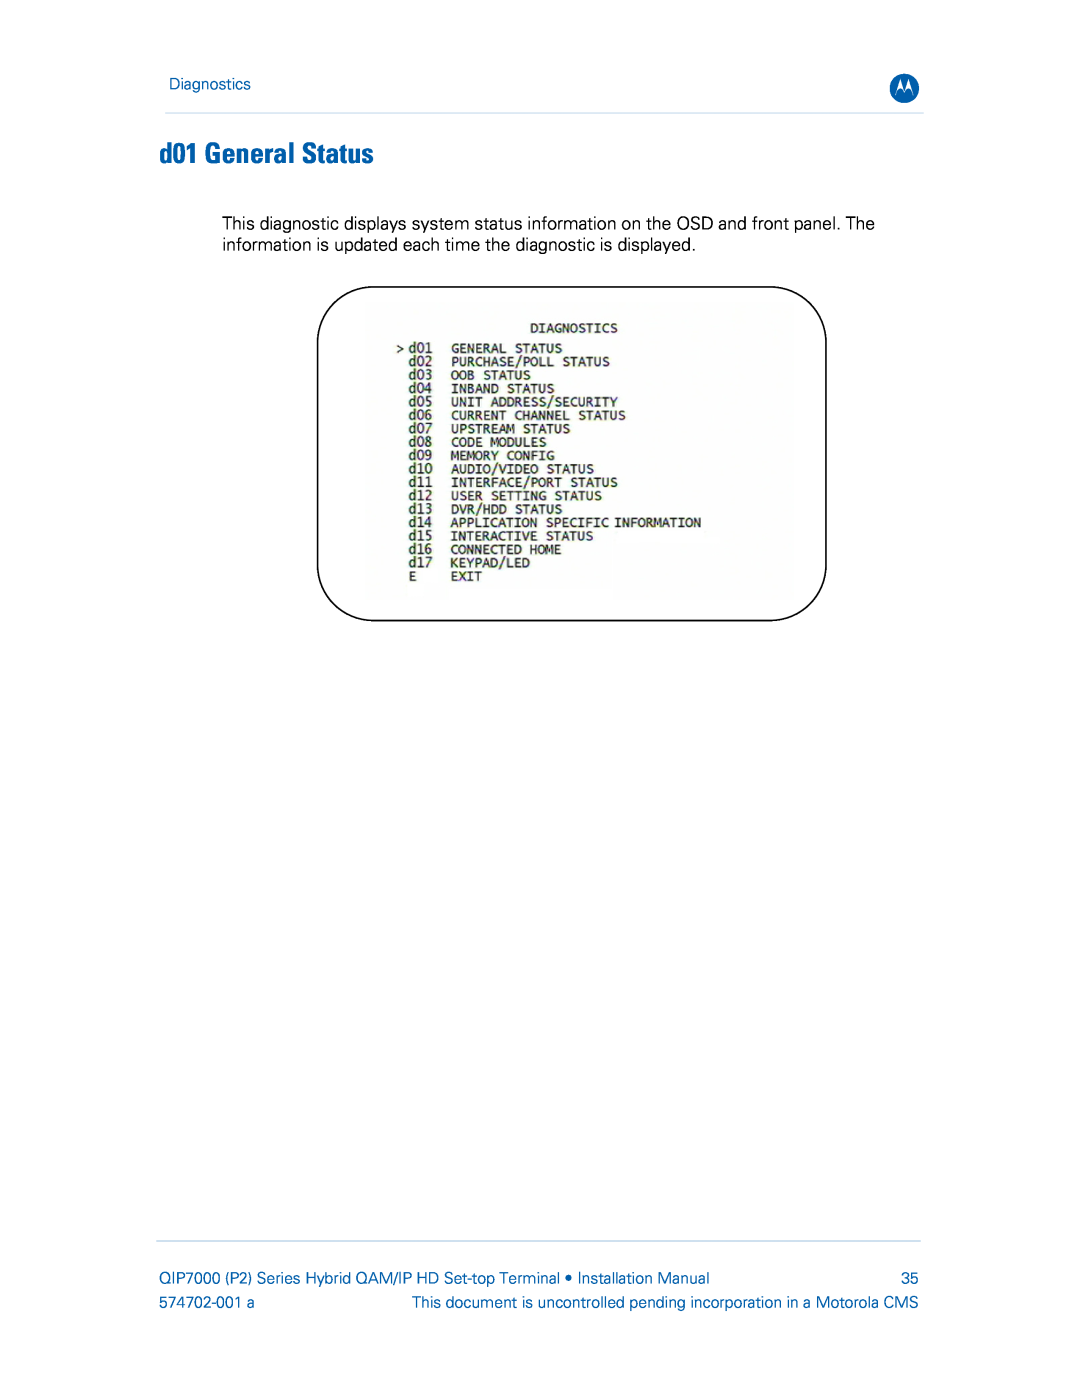 Motorola QIP7000 installation manual d01 General Status, Diagnostics, 574702-001 a 